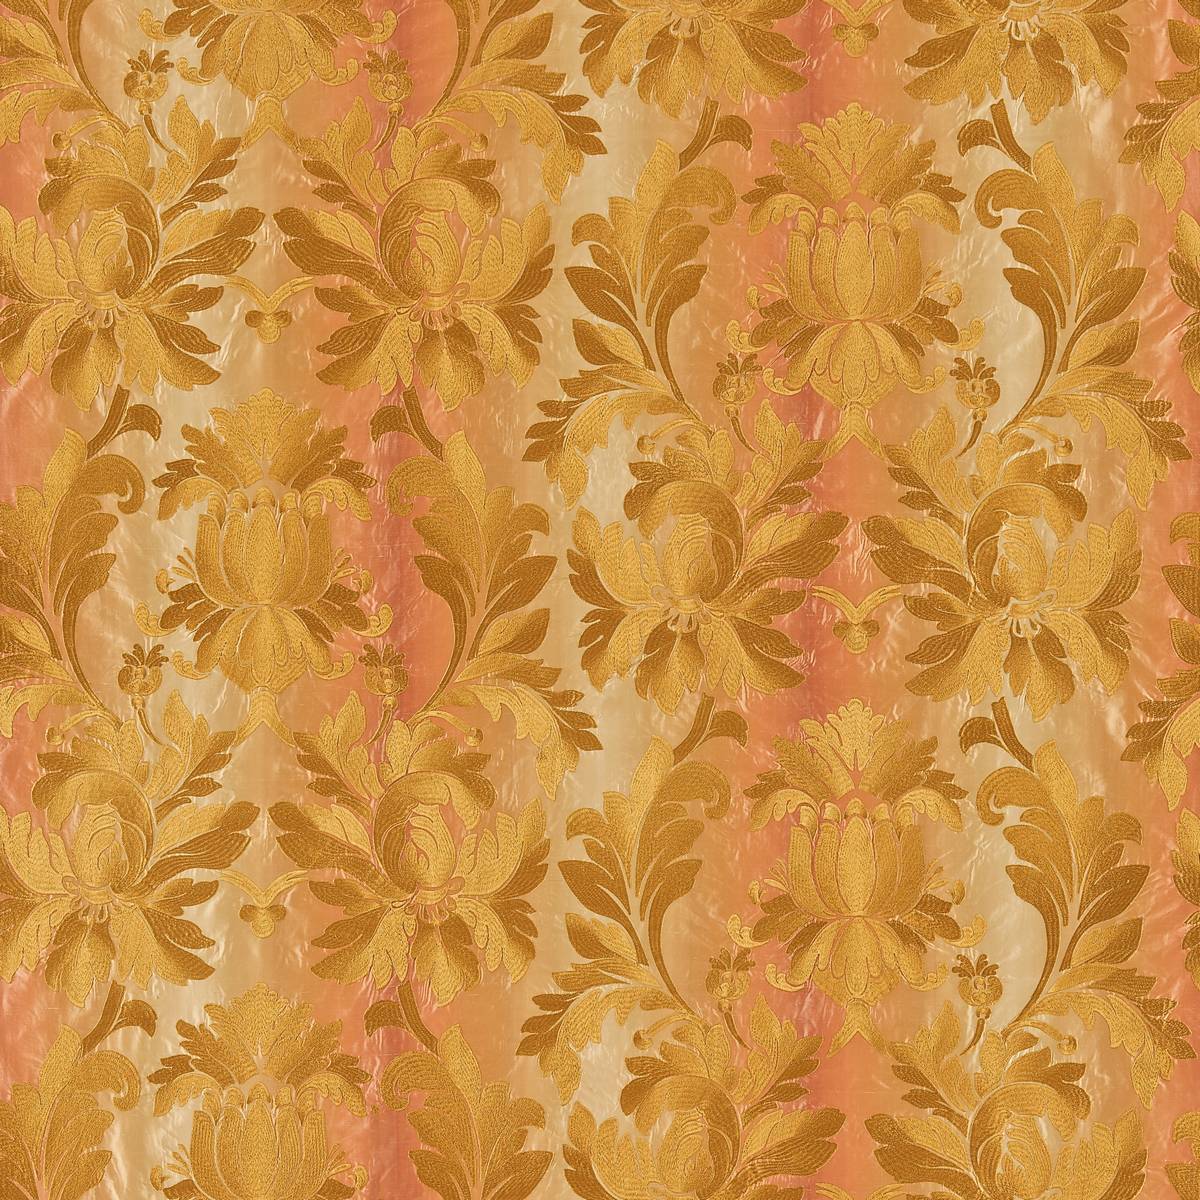 Tsarina Amber Fabric by Zoffany